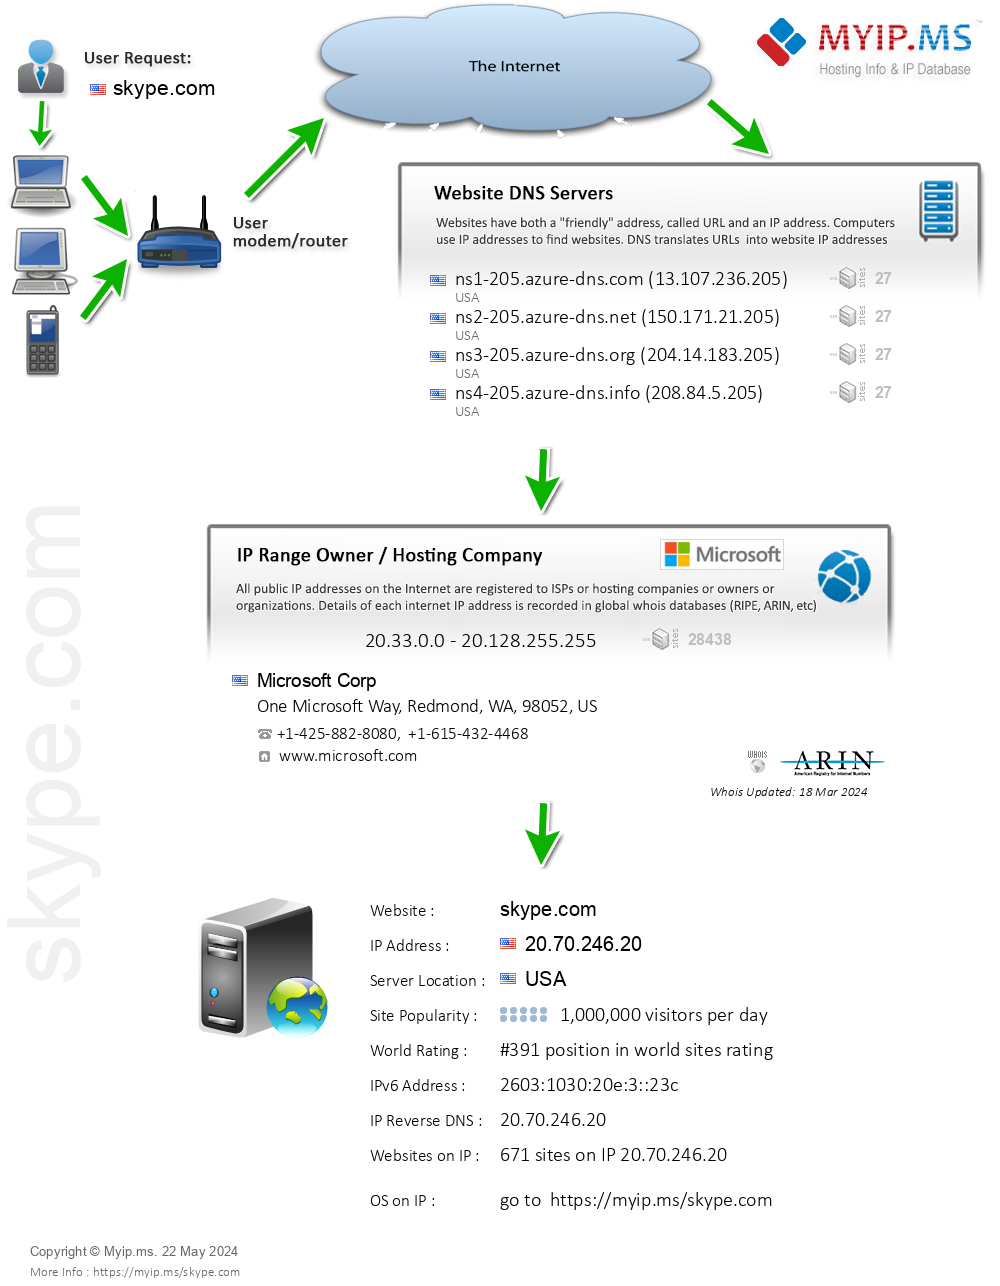 Skype.com - Website Hosting Visual IP Diagram